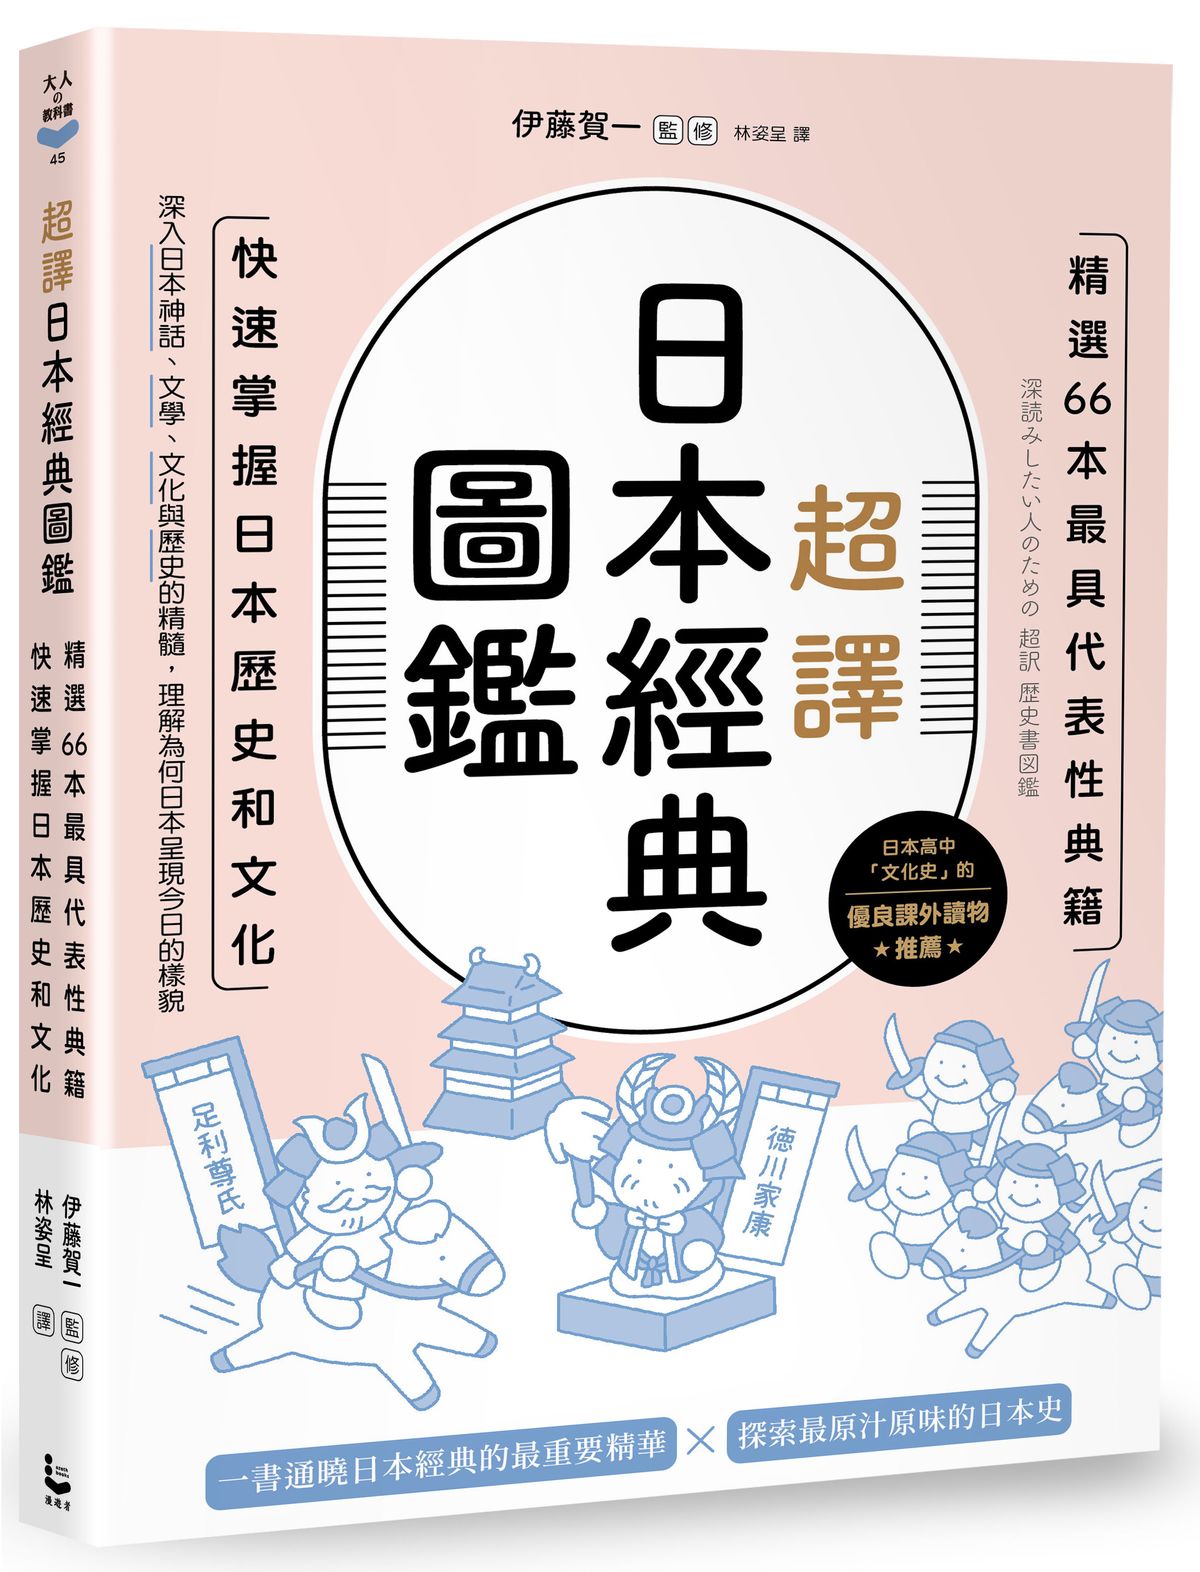 超譯日本經典圖鑑: 精選66本最具代表性典籍, 快速掌握日本歷史和文化